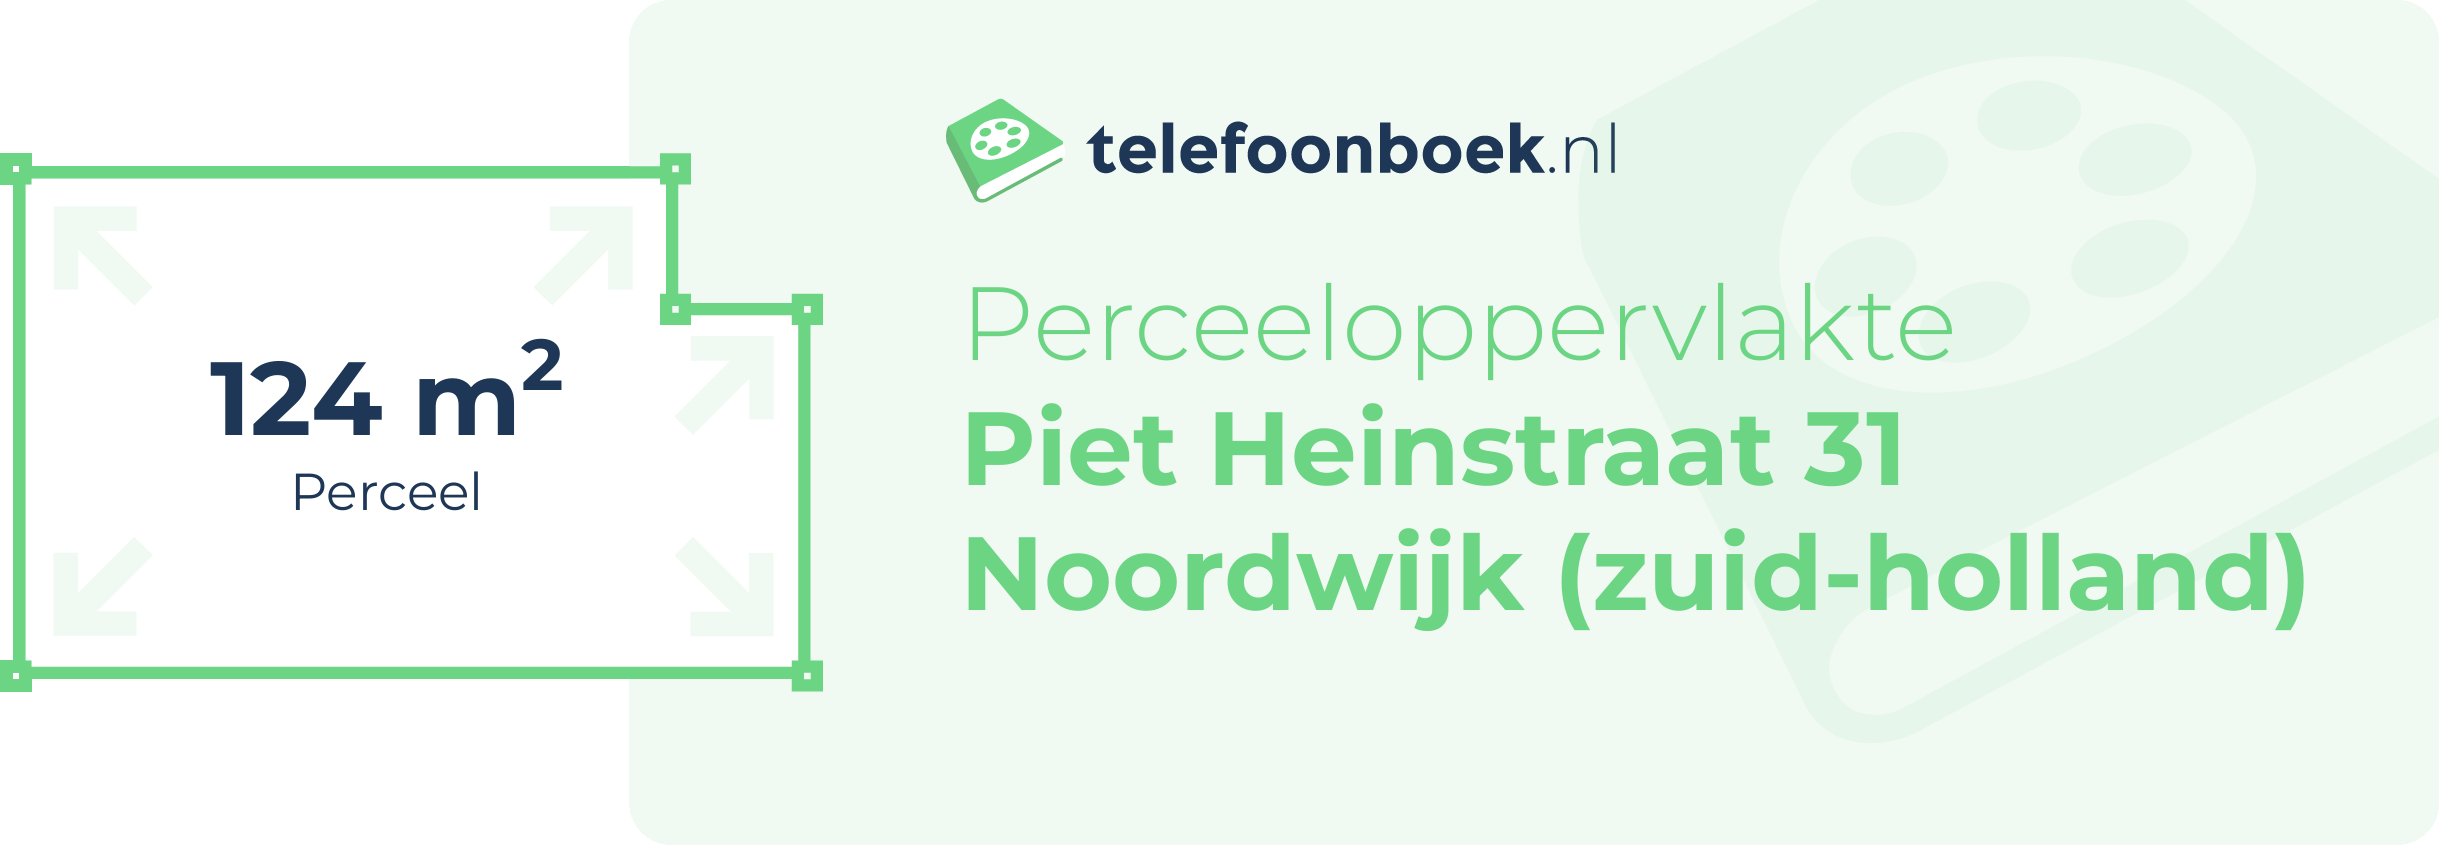 Perceeloppervlakte Piet Heinstraat 31 Noordwijk (Zuid-Holland)